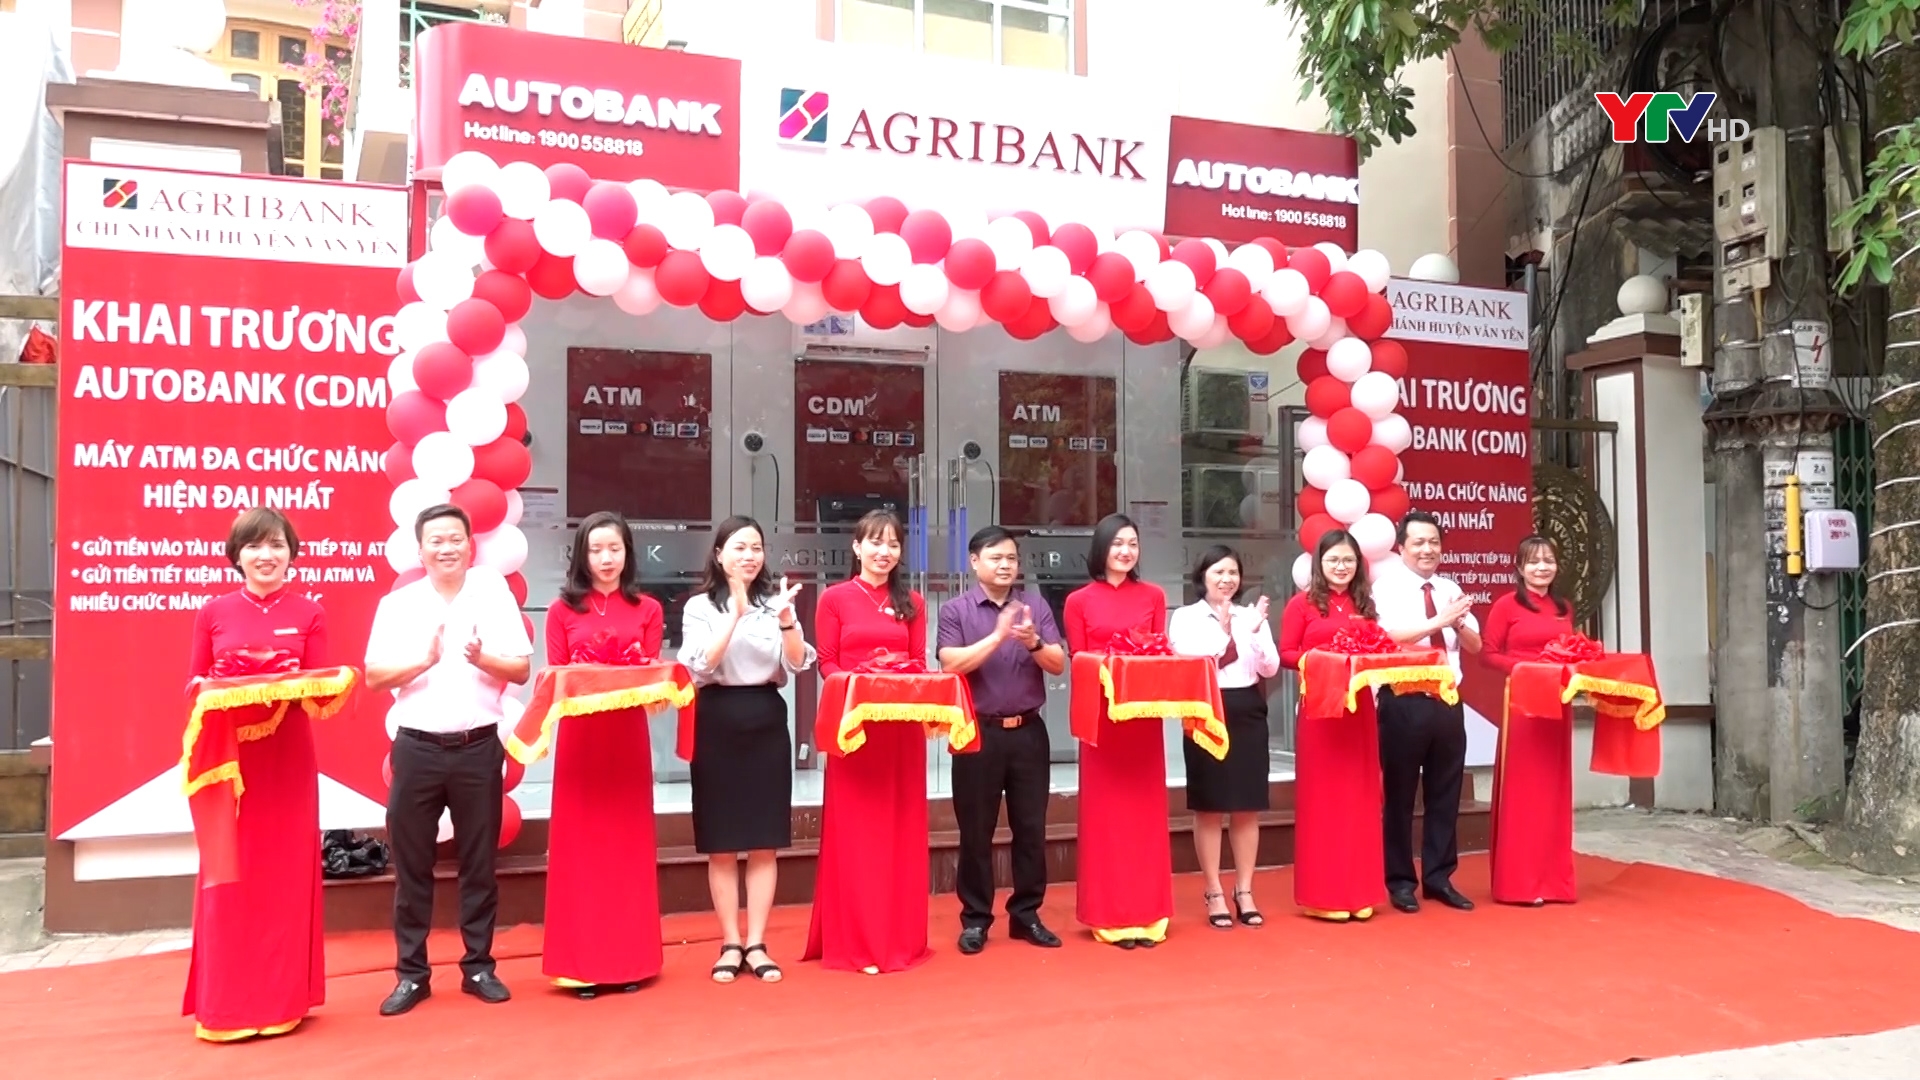 Ngân hàng NN và PTNT - Chi nhánh huyện Văn Yên, Bắc Yên Bái khai trương máy gửi rút tiền tự động Autobank